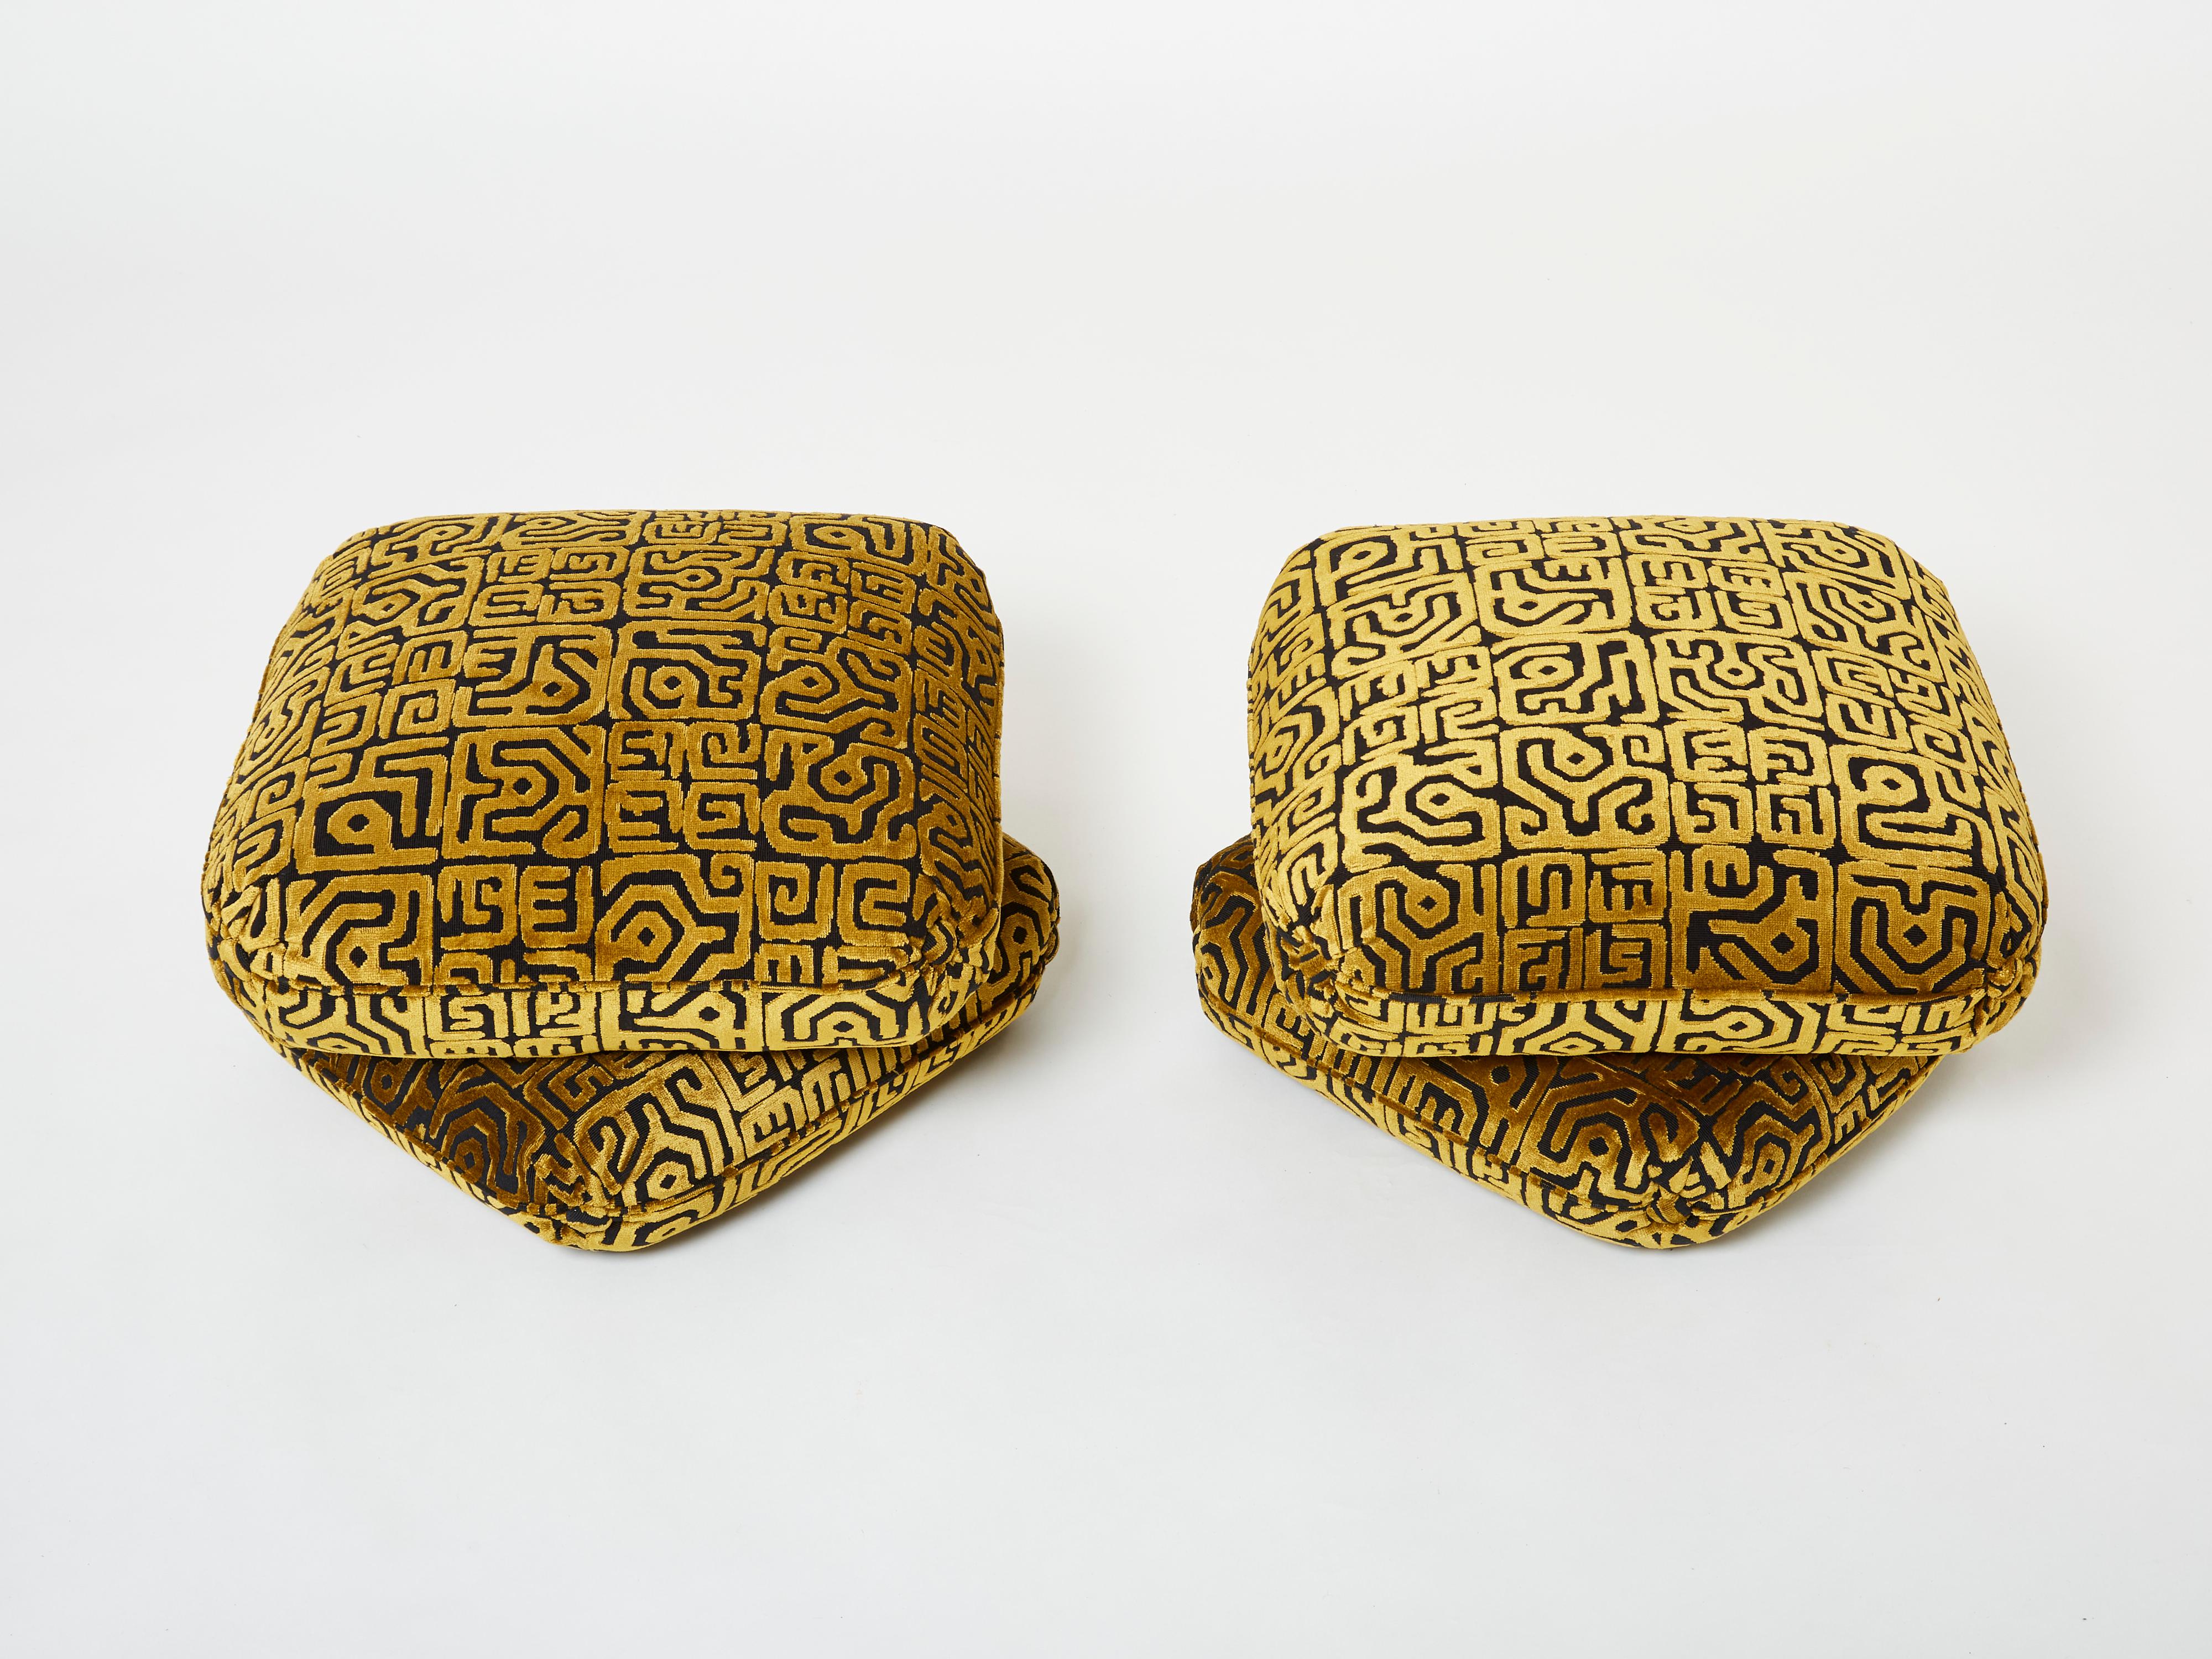 Schönes Paar Hocker des französischen Designers Jacques Charpentier für Maison Jansen, entworfen in den 1970er Jahren. Die Hocker Poufs bestehen aus zwei großen, miteinander verbundenen Kissenelementen. Sie wurden neu mit einem wunderschönen